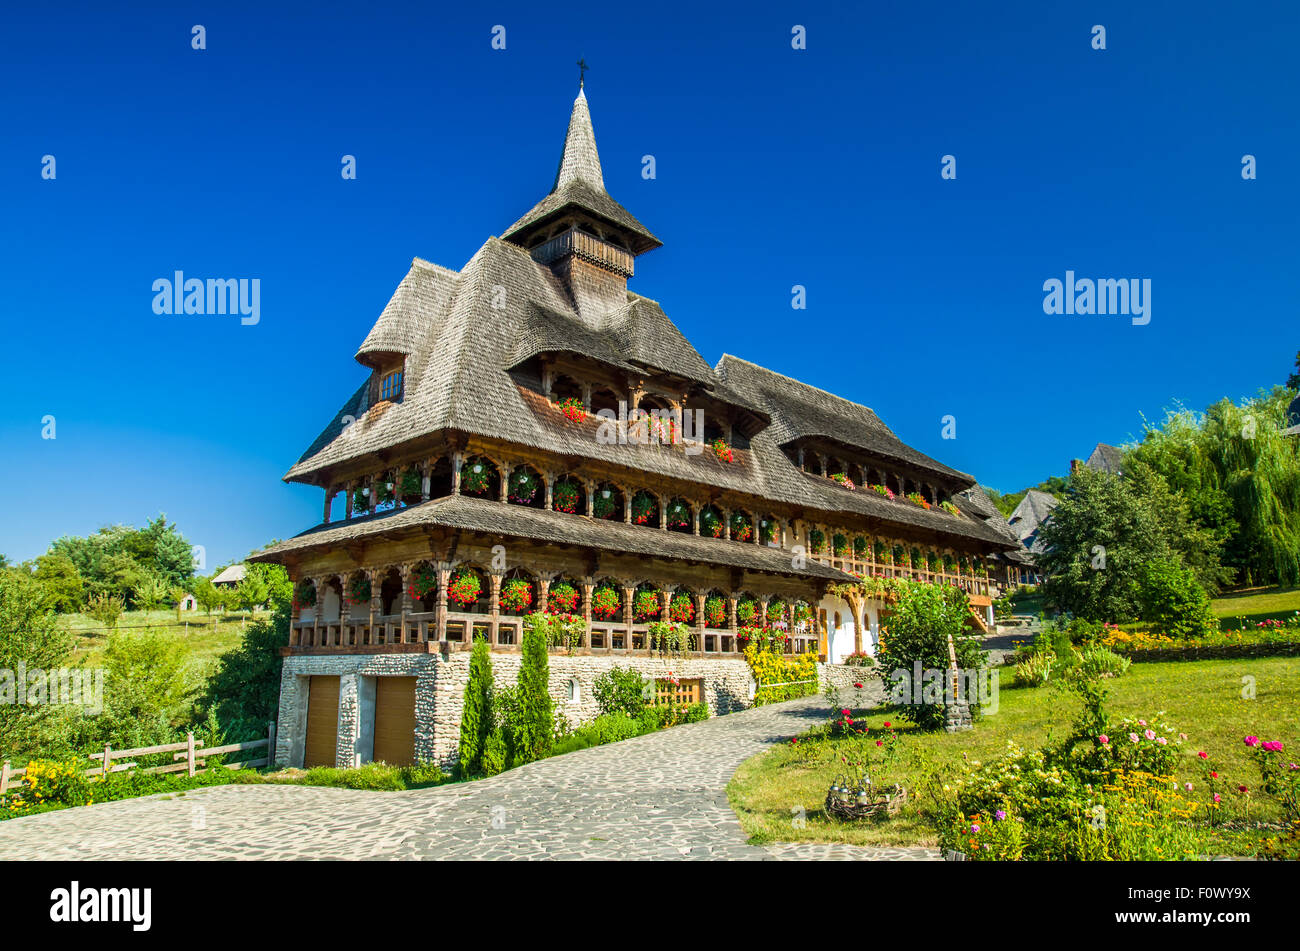 Barsana wooden monastery, Maramures, Romania. Birsana monastery is one of the main point of interest in Maramures county. Stock Photo